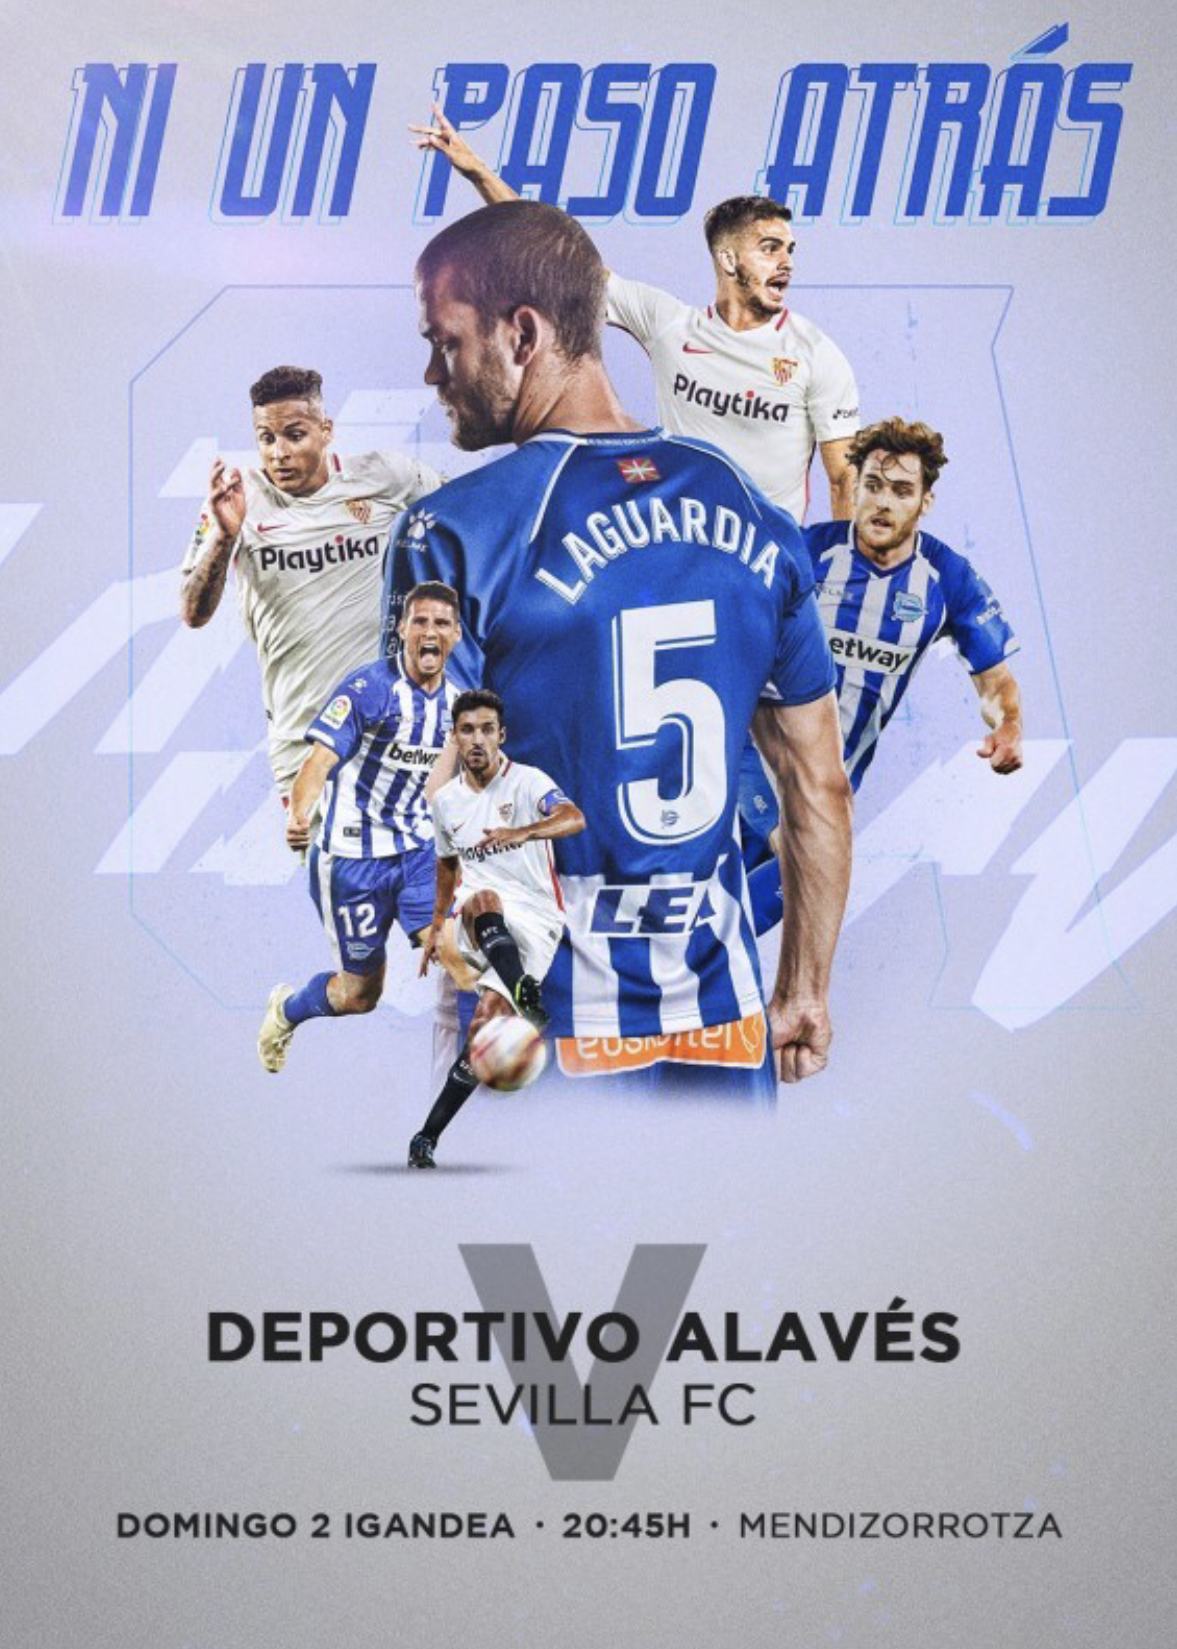 Equipo que renovó plaza de forma anticipada para la temporada 18/19 y que por ello ha resultado premiado con dos entradas para asistir en directo y de forma gratuita al encuentro de Fútbol de la Liga Santander, entre Deportivo Alavés y Sevilla.